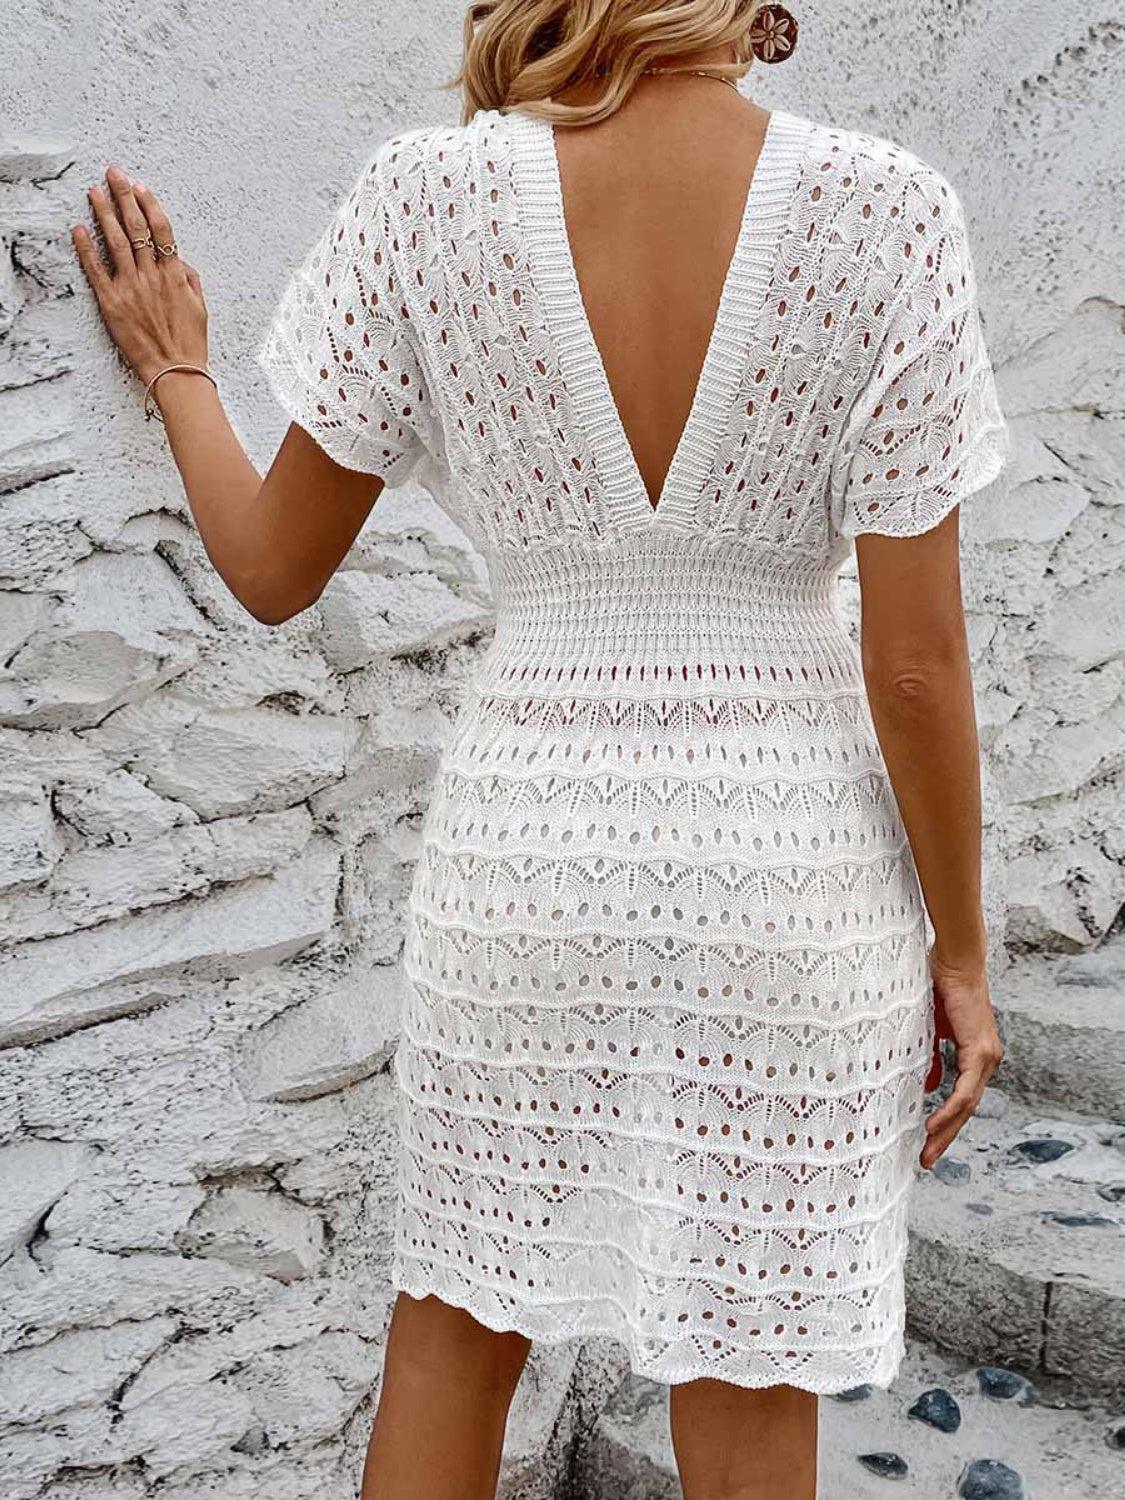 a woman wearing a white crochet dress